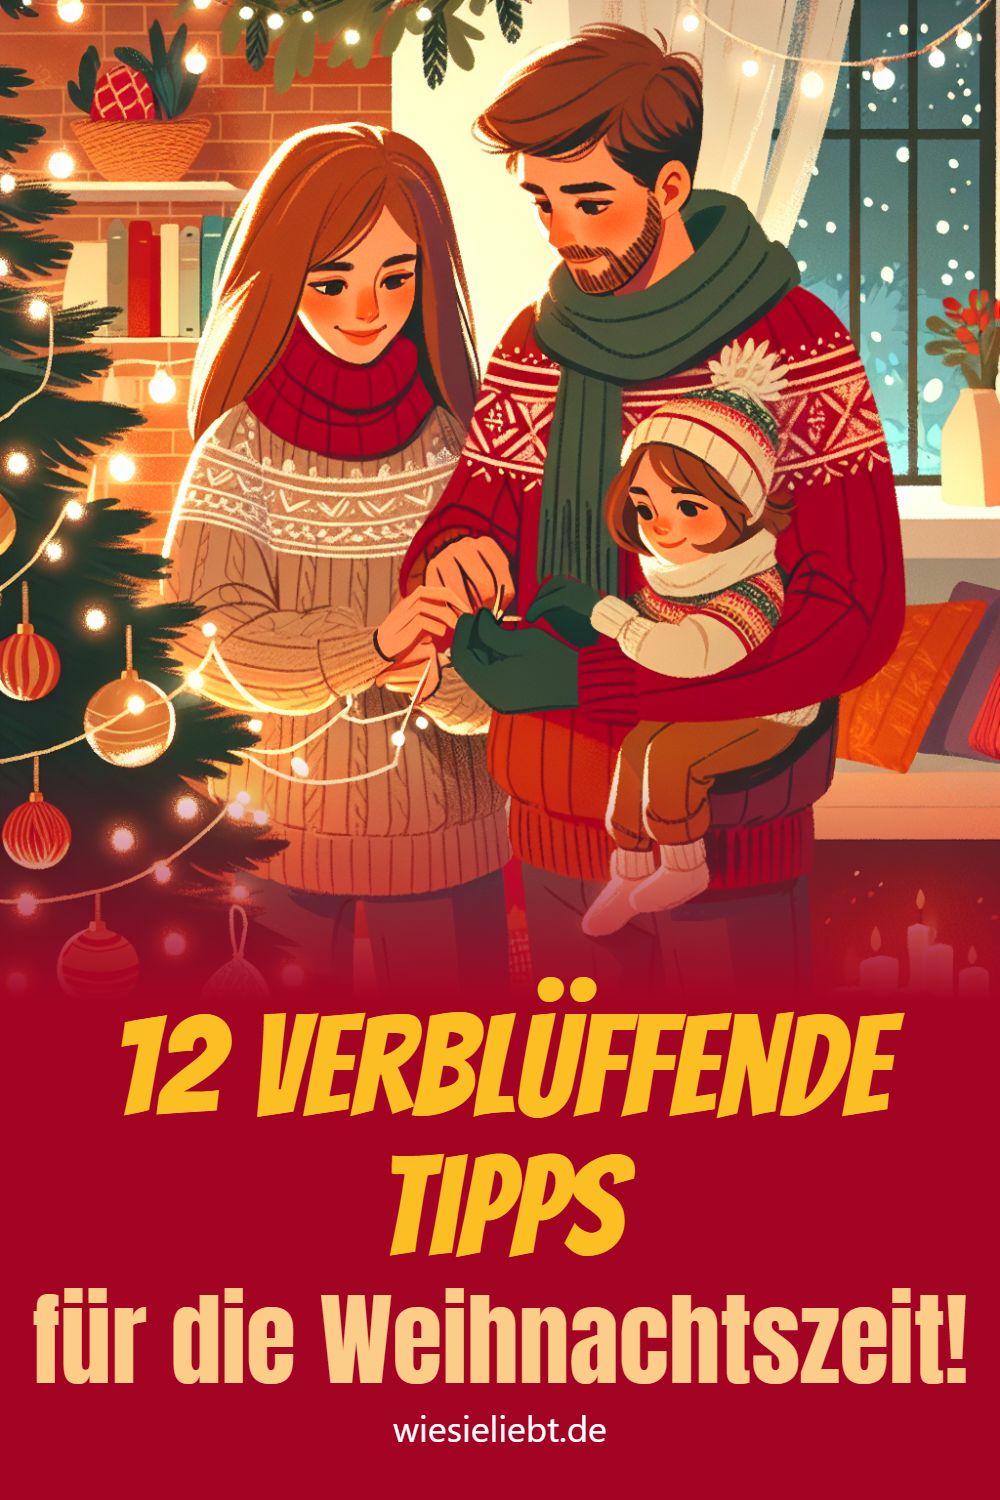 12 verblüffende Tipps für die Weihnachtszeit!